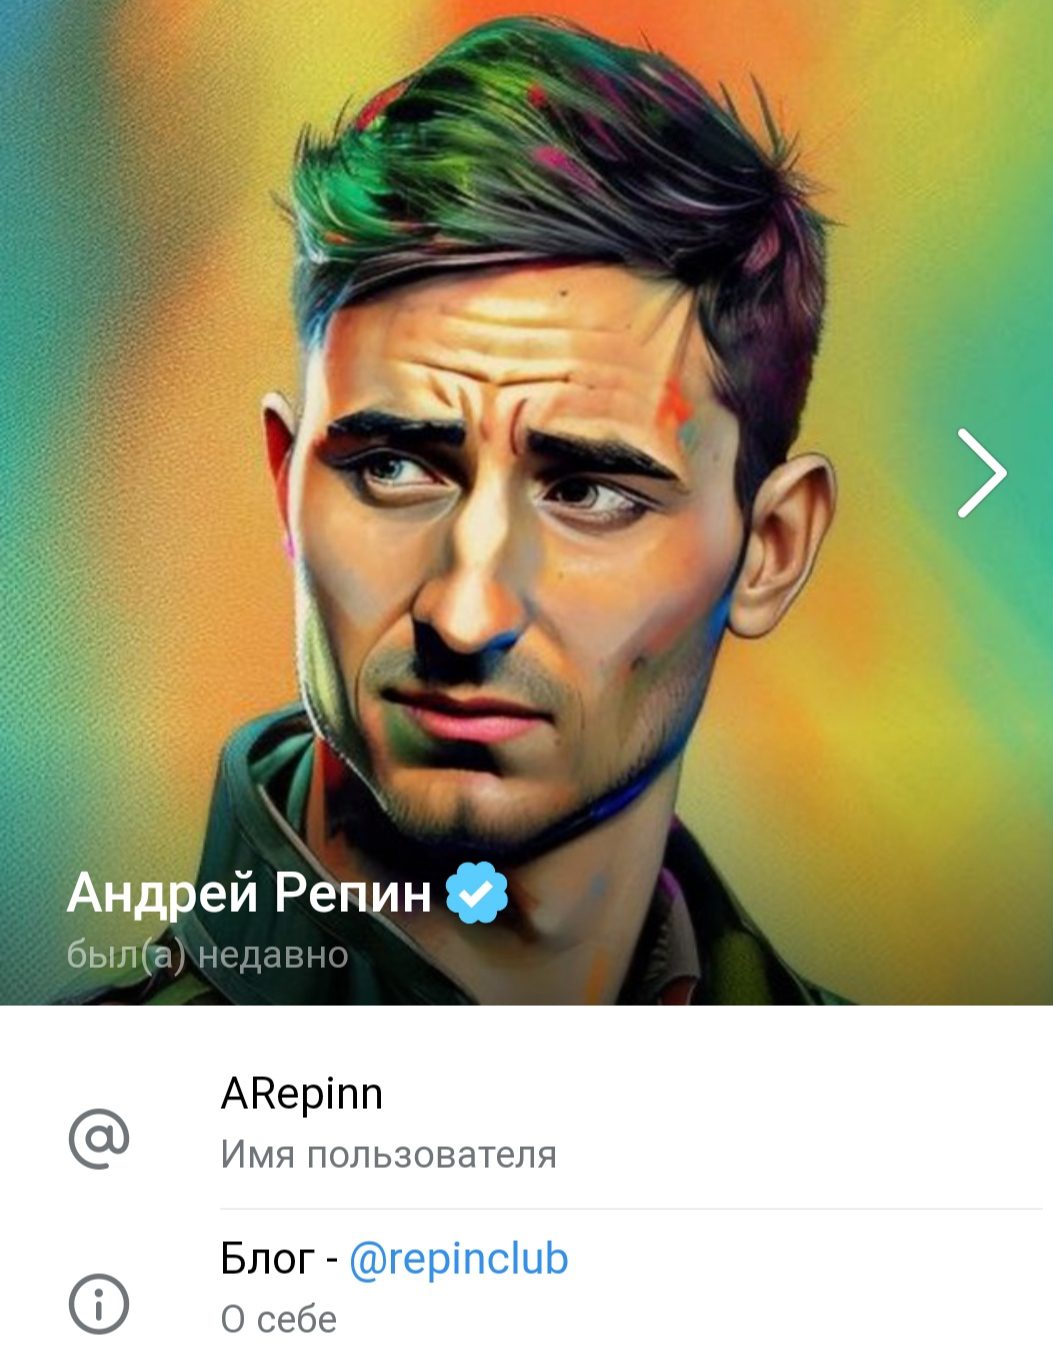 Андрей Репин телеграмм